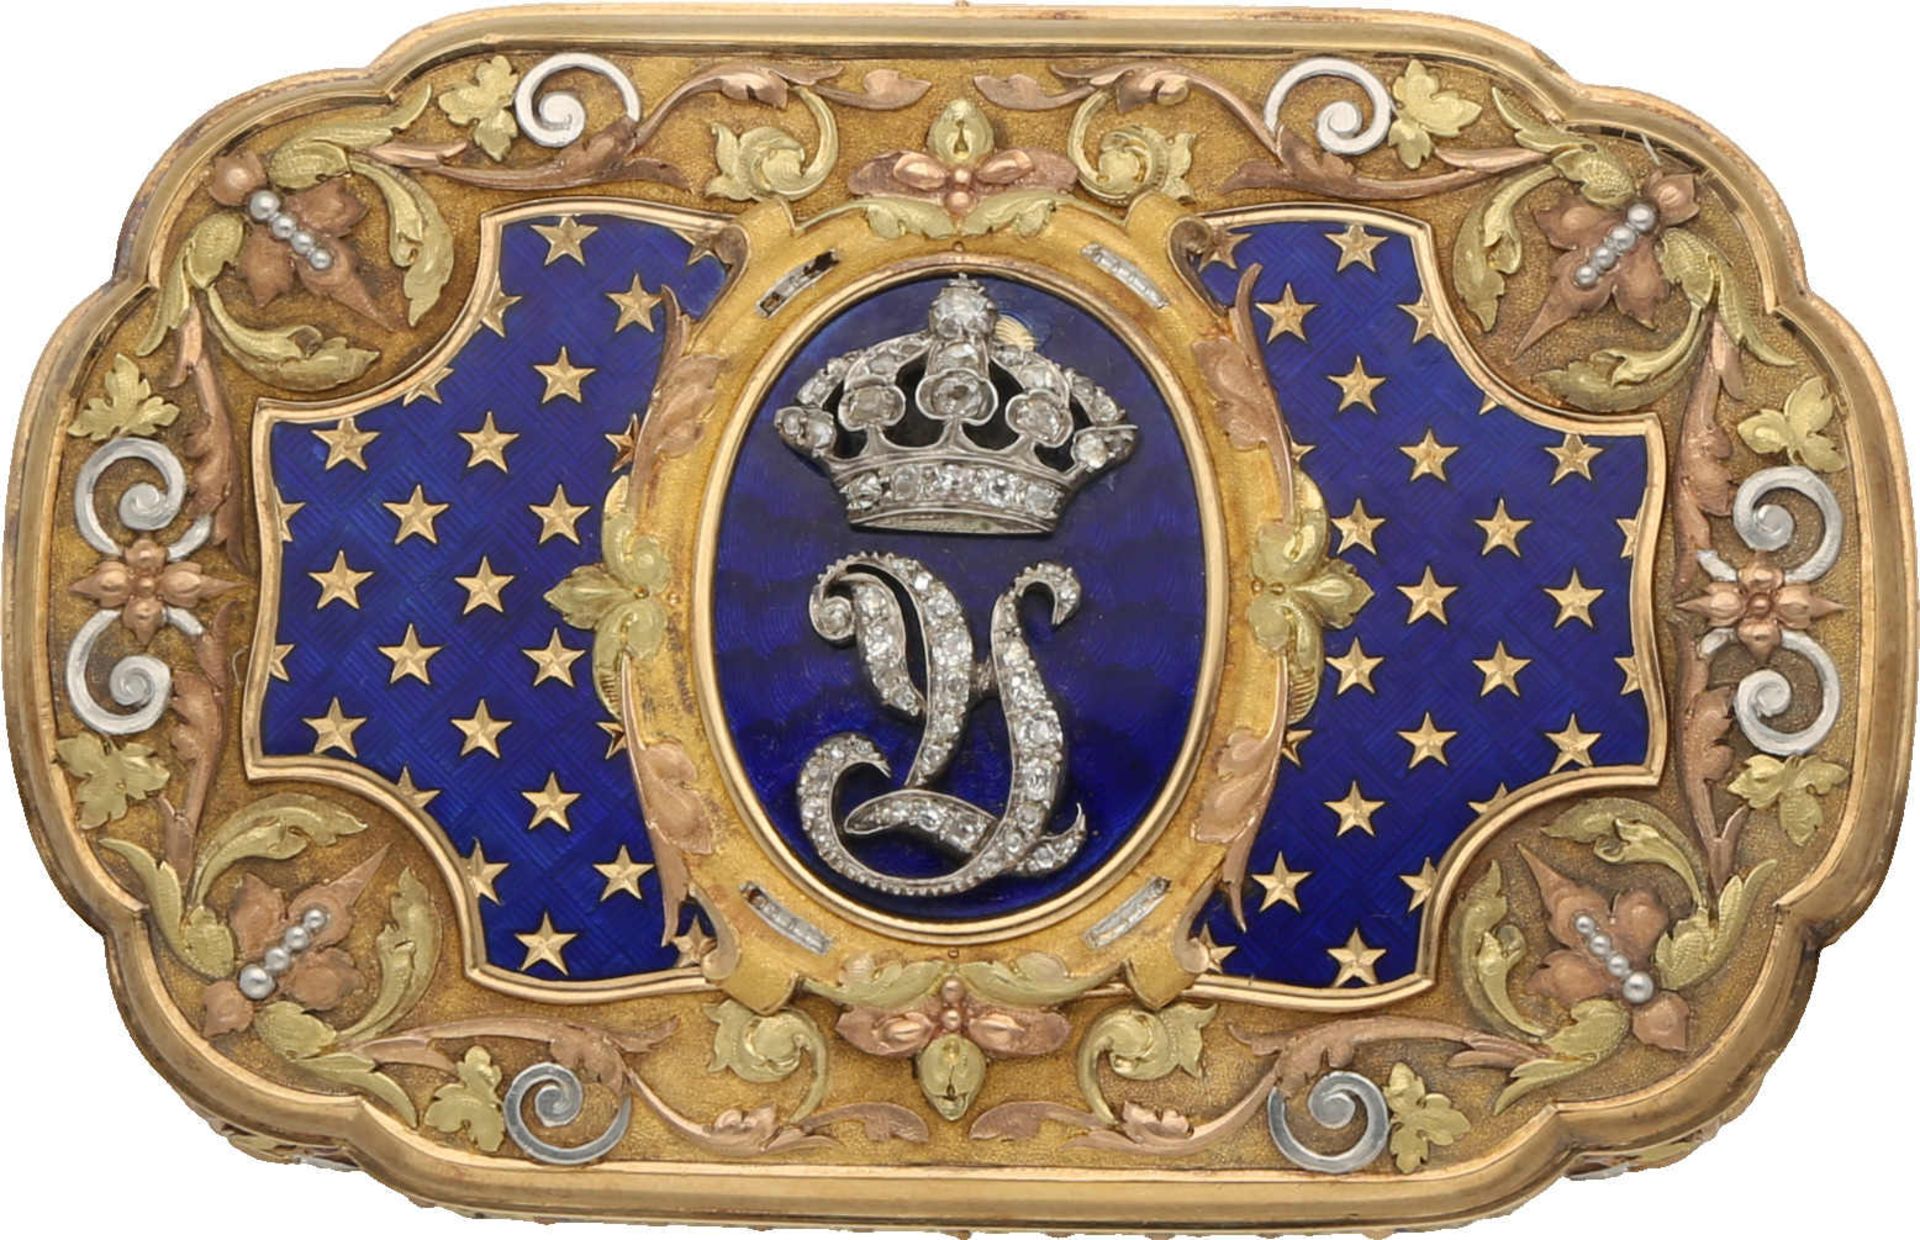 Gold-Schatulle "Tabatière" Traumhaftschönes und historisch sehr interessantes Diplomaten-Geschenk in